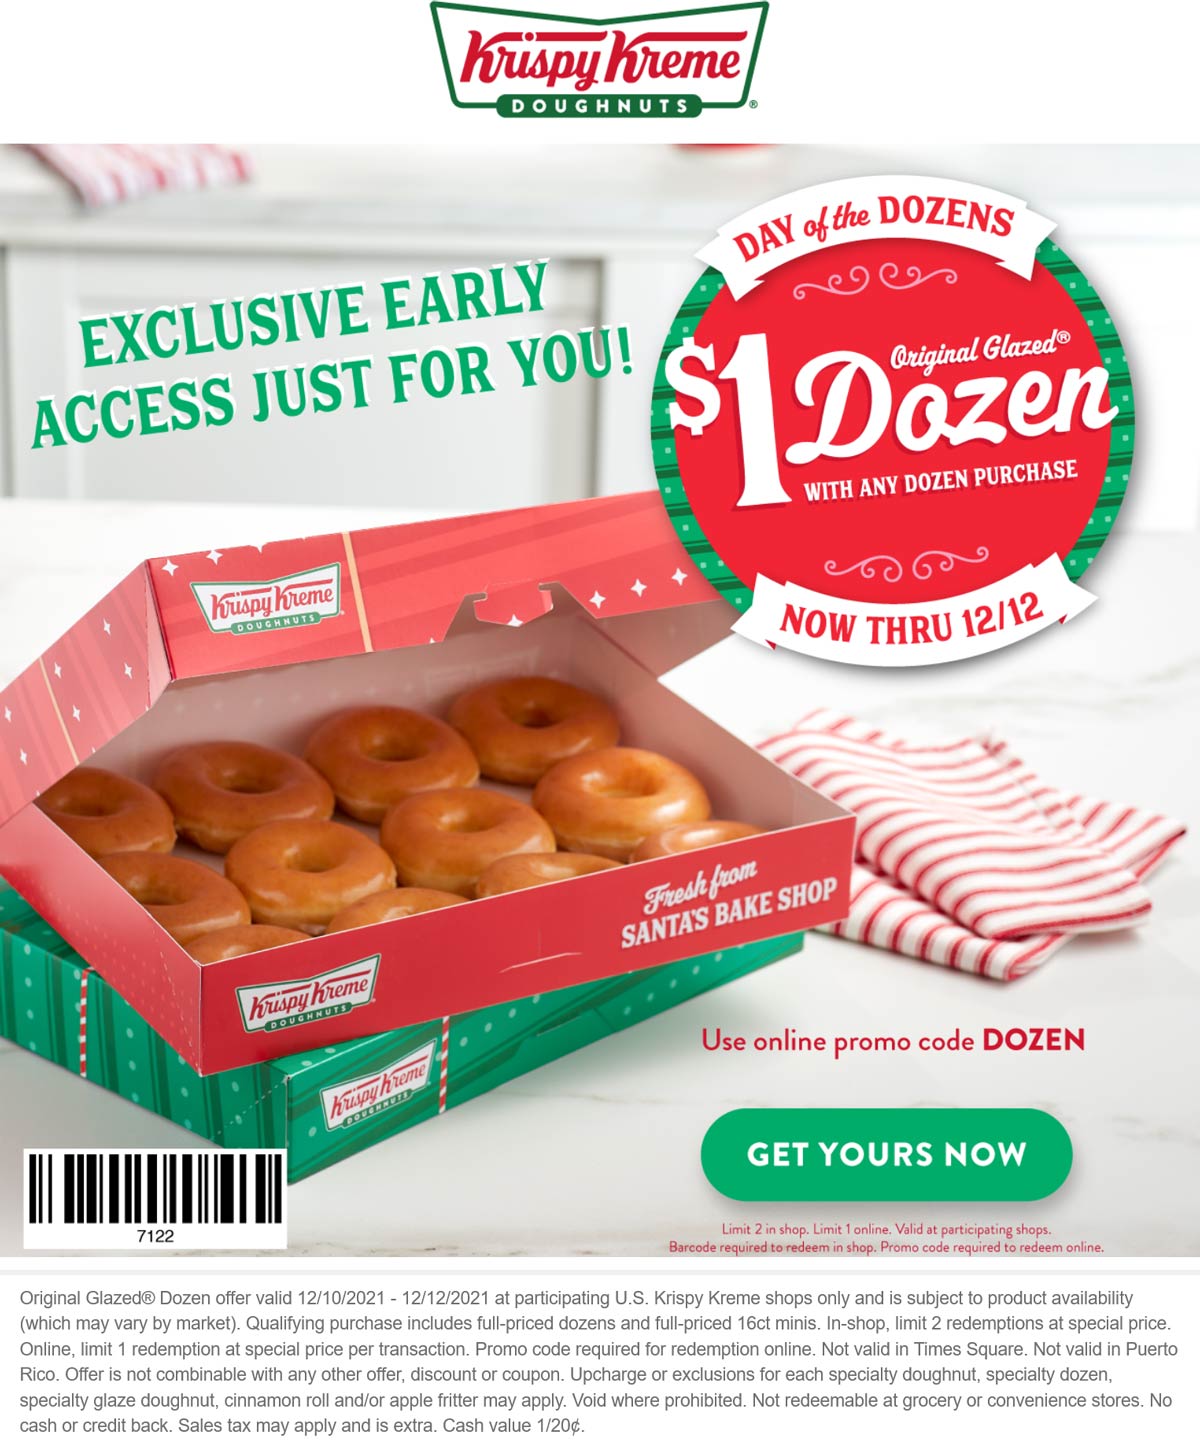 Krispy Kreme restaurants Coupon  Second dozen doughnuts for $1 at Krispy Kreme, or online via promo code DOZEN #krispykreme 